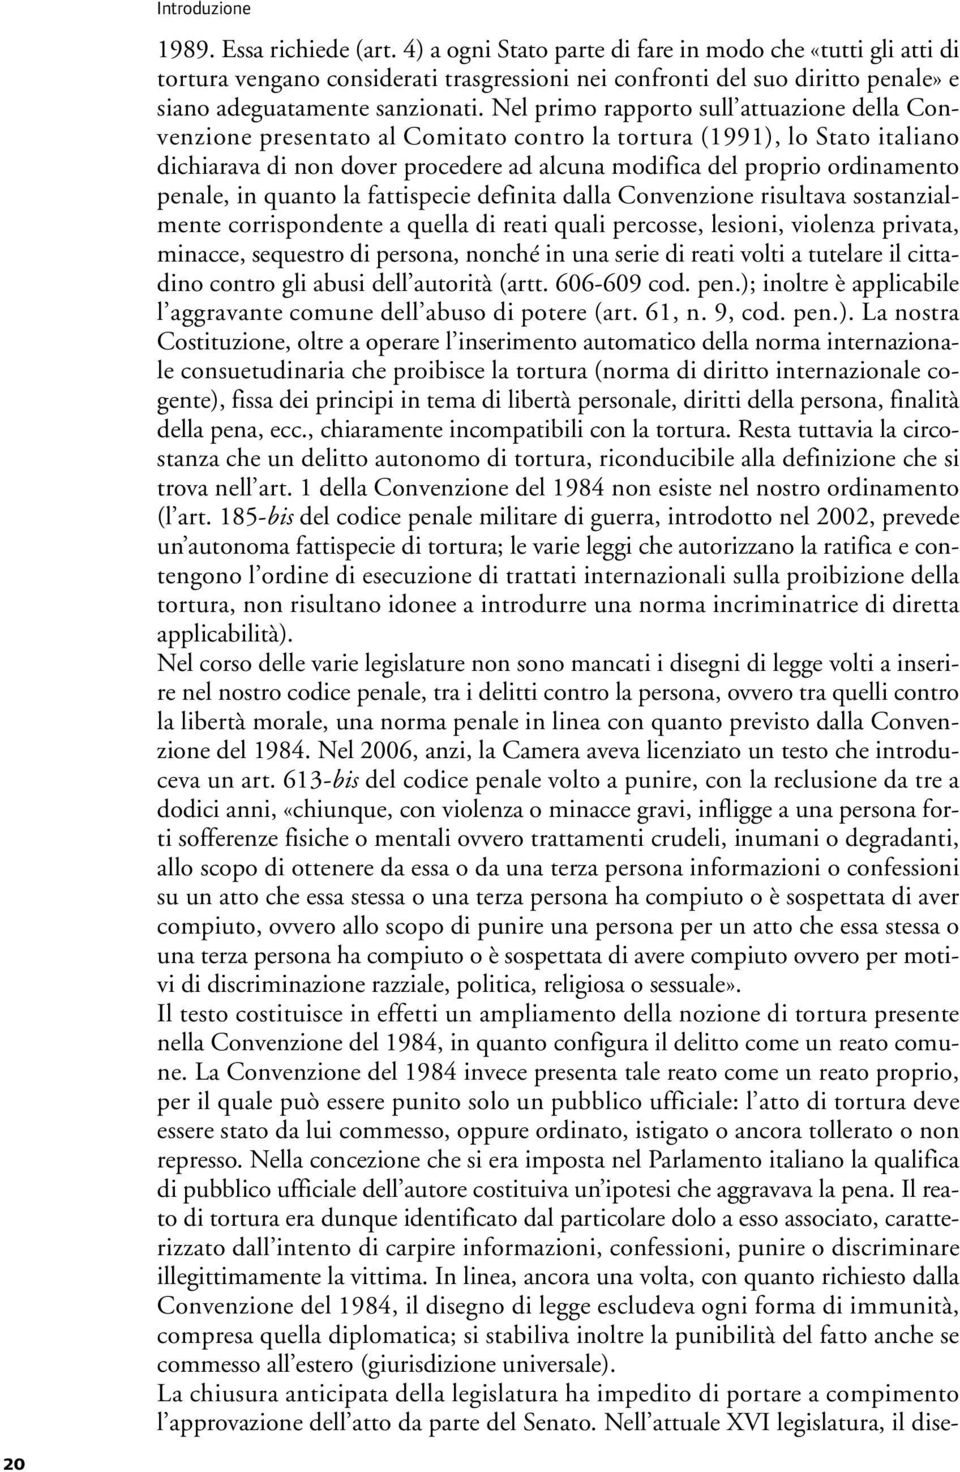 Nel primo rapporto sull attuazione della Convenzione presentato al Comitato contro la tortura (1991), lo Stato italiano dichiarava di non dover procedere ad alcuna modifica del proprio ordinamento